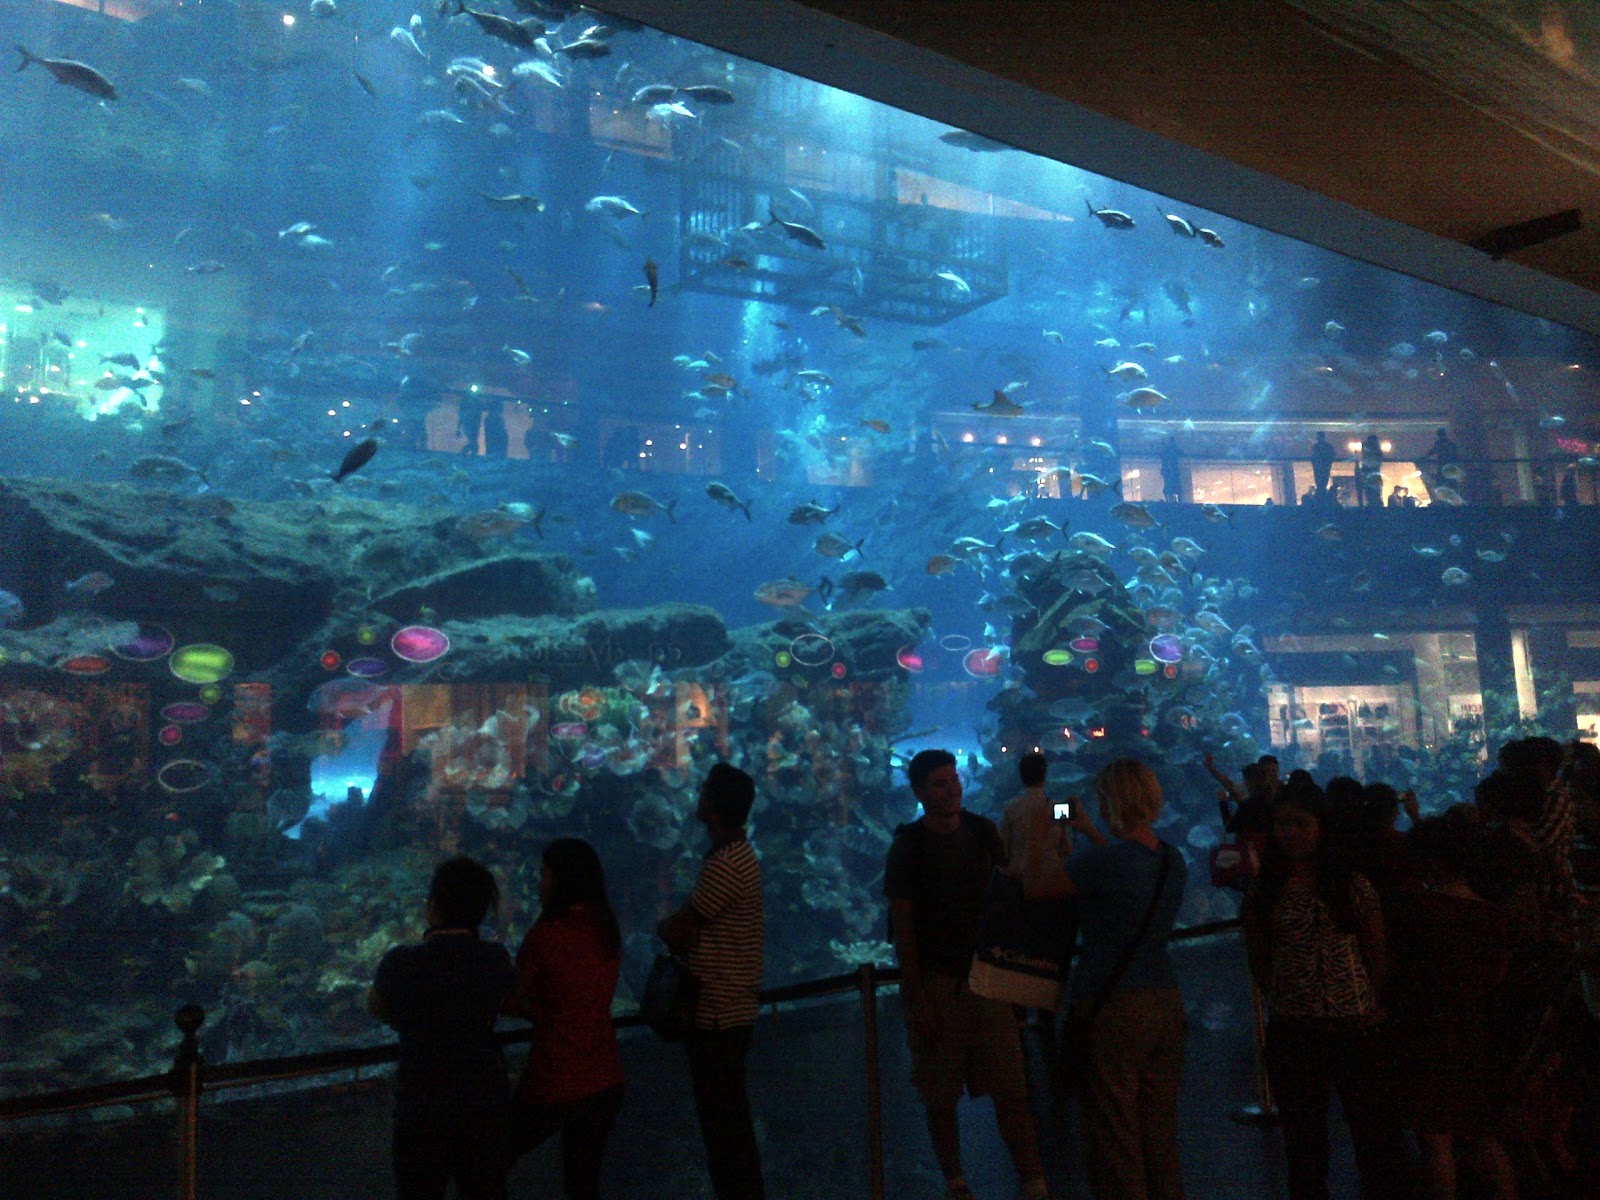 Dubai Mall Aquarium Photo Gallery